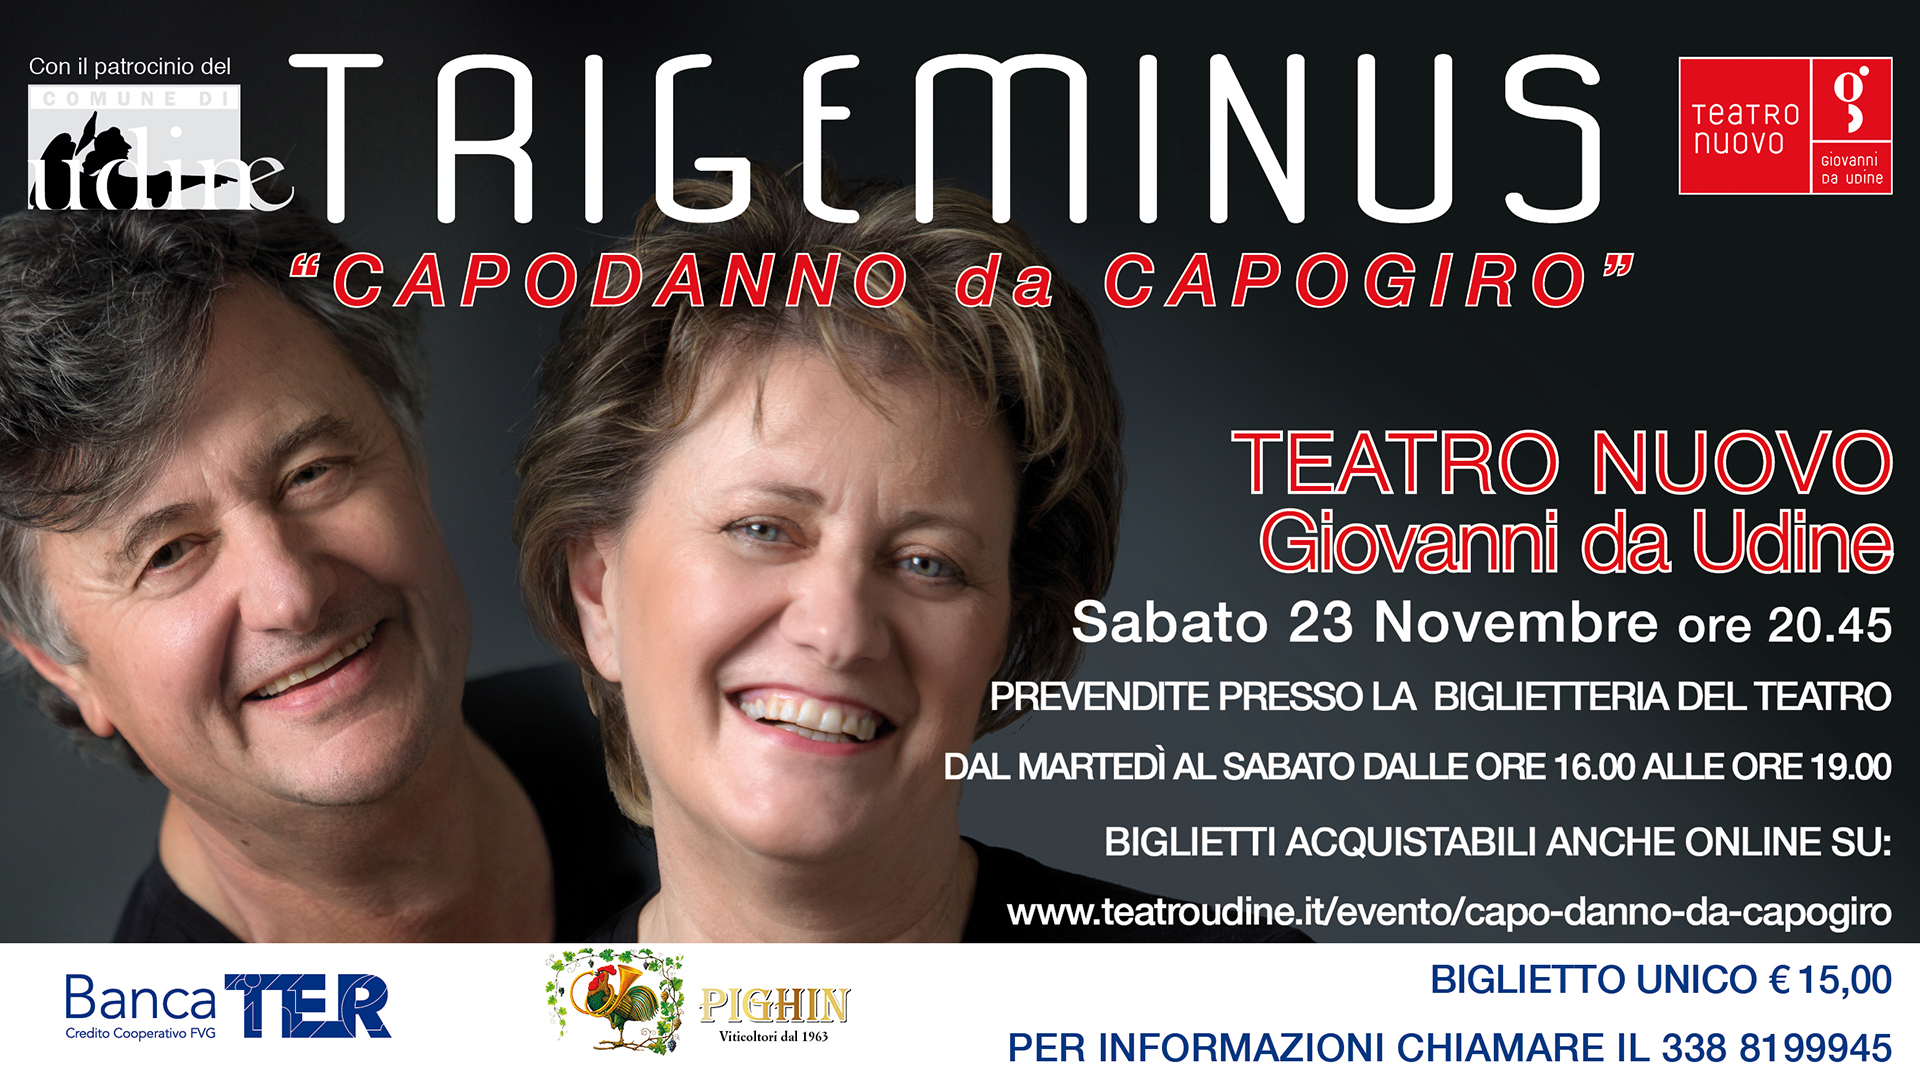 Al momento stai visualizzando “Capodanno da capogiro” con i Trigeminus sabato 23 novembre al Teatro Nuovo Giovanni da Udine